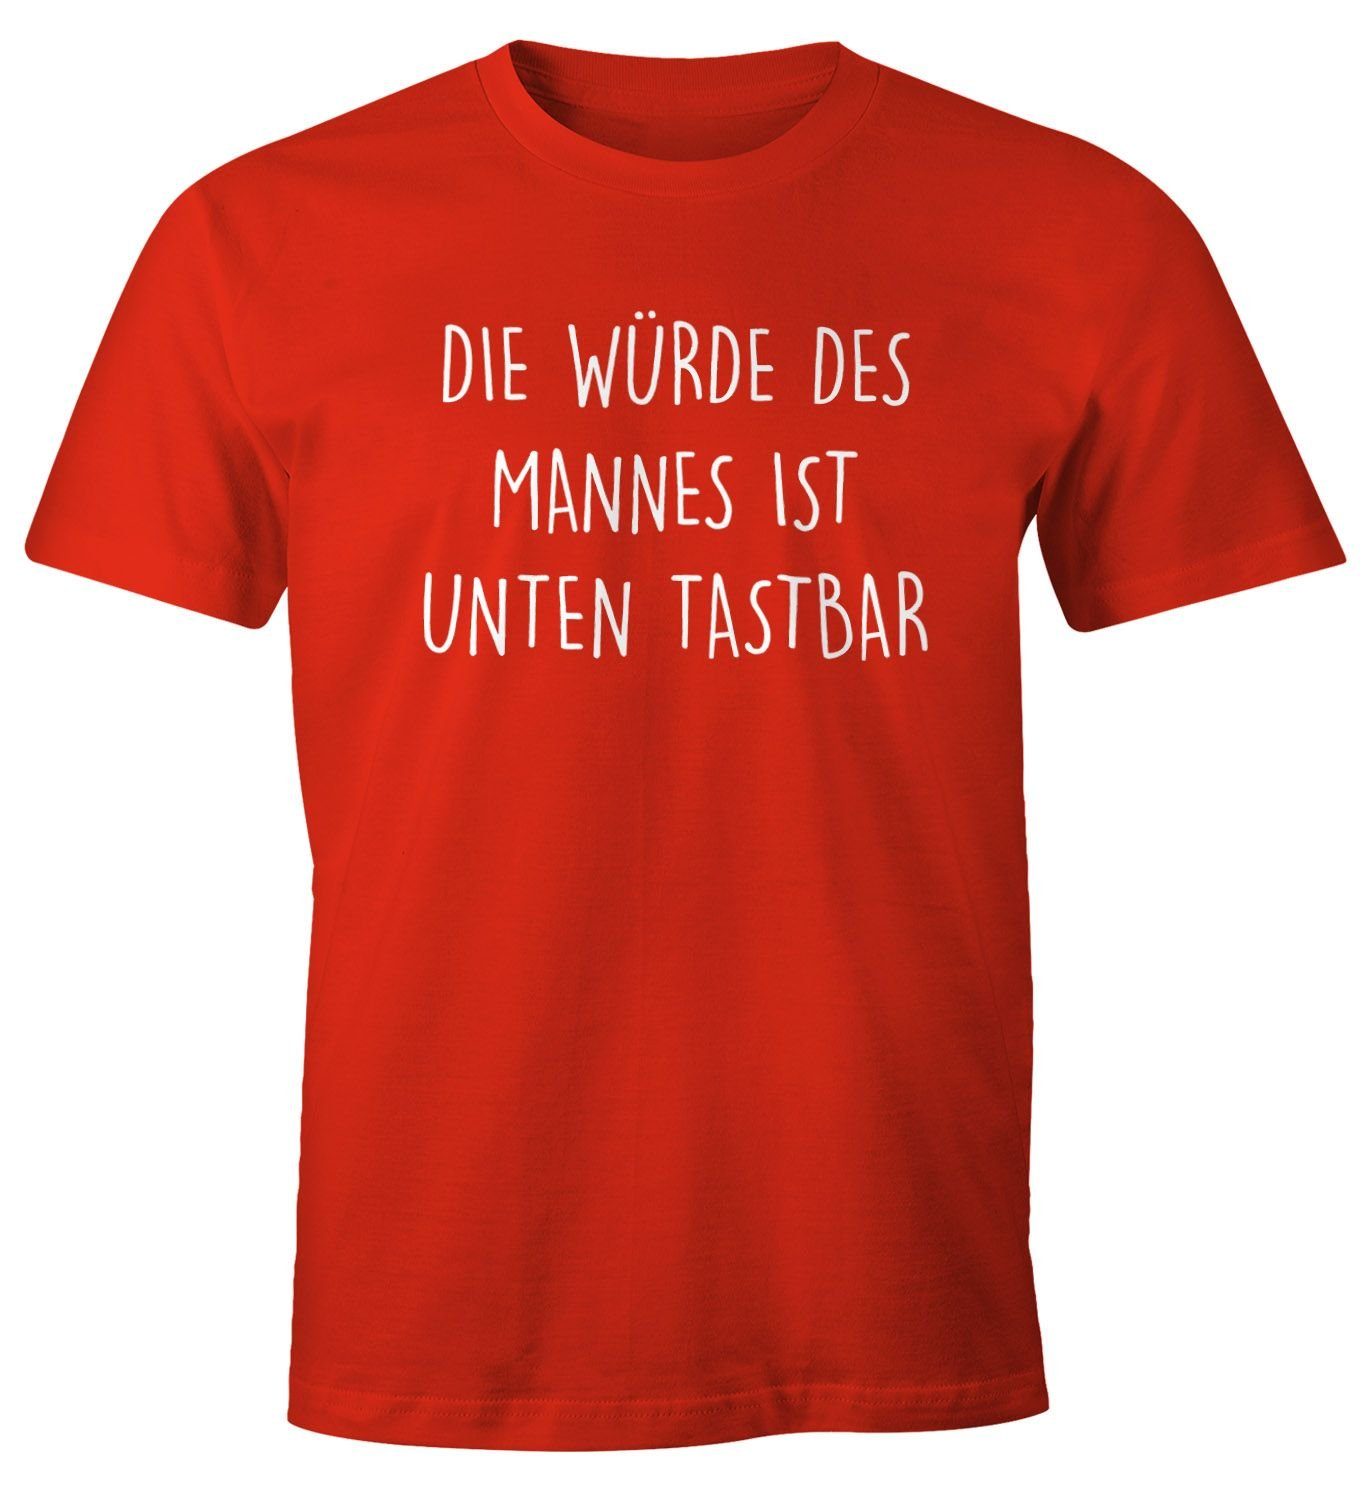 MoonWorks Print-Shirt Lustiges Herren ist Die Moonworks® T-Shirt tastbar Fun-Shirt Print Mannes unten mit rot mit Würde des Spruch